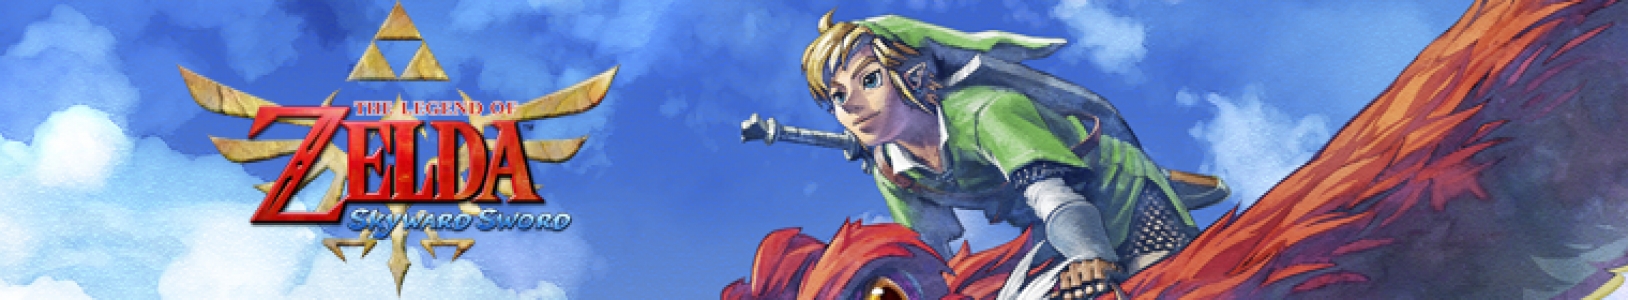 The Legend of Zelda: Skyward Sword banner